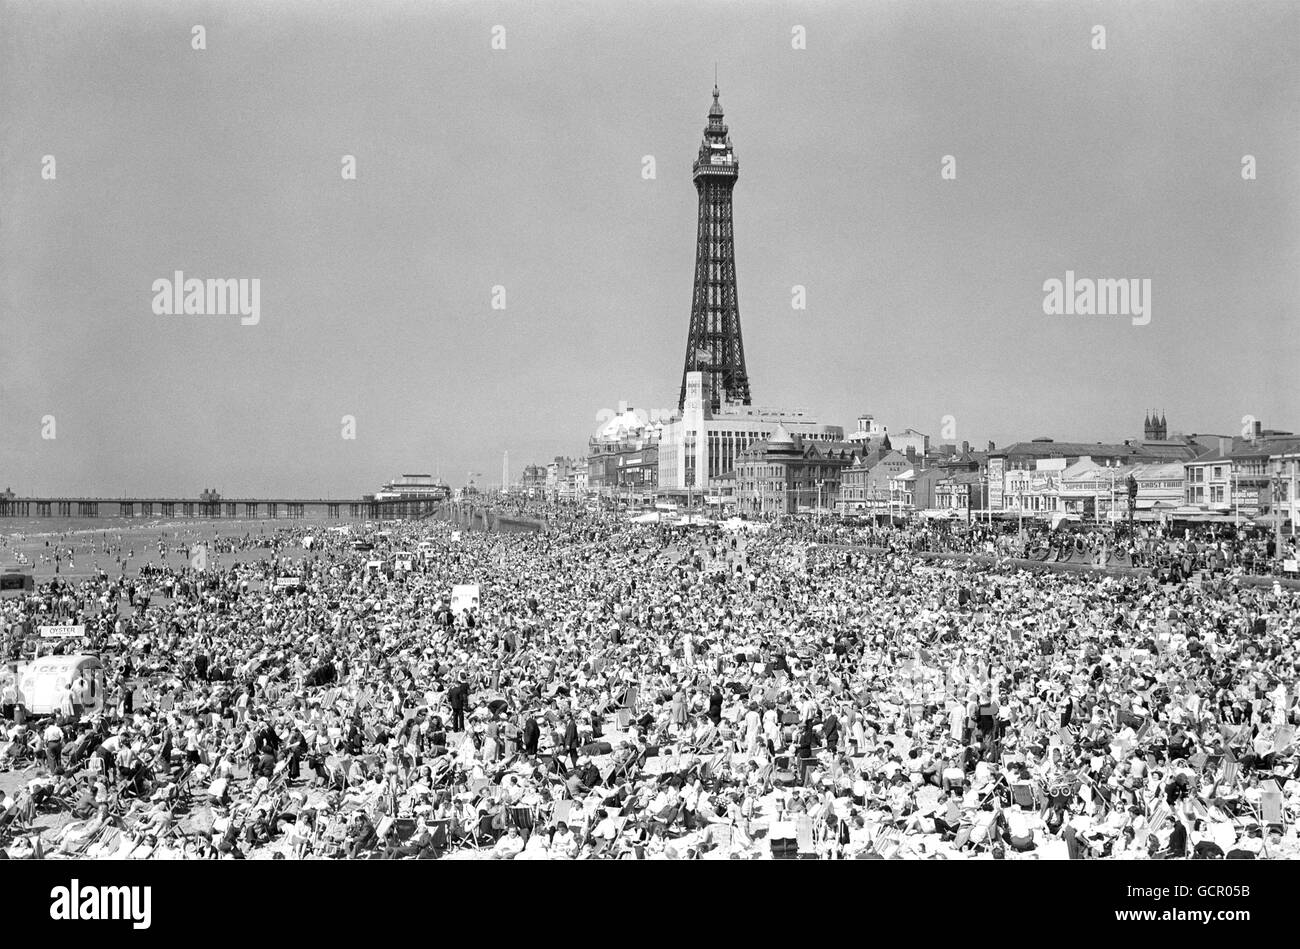 Rien ne pousse plus vite au soleil qu'une foule de vacances - il suffit de regarder cette plage entre les deux jetées à Blackpool. Cette semaine, le beau temps d'été les a vraiment fait sortir et il n'y a pas assez de place pour un autre soleil. 8 juillet 1955 Banque D'Images